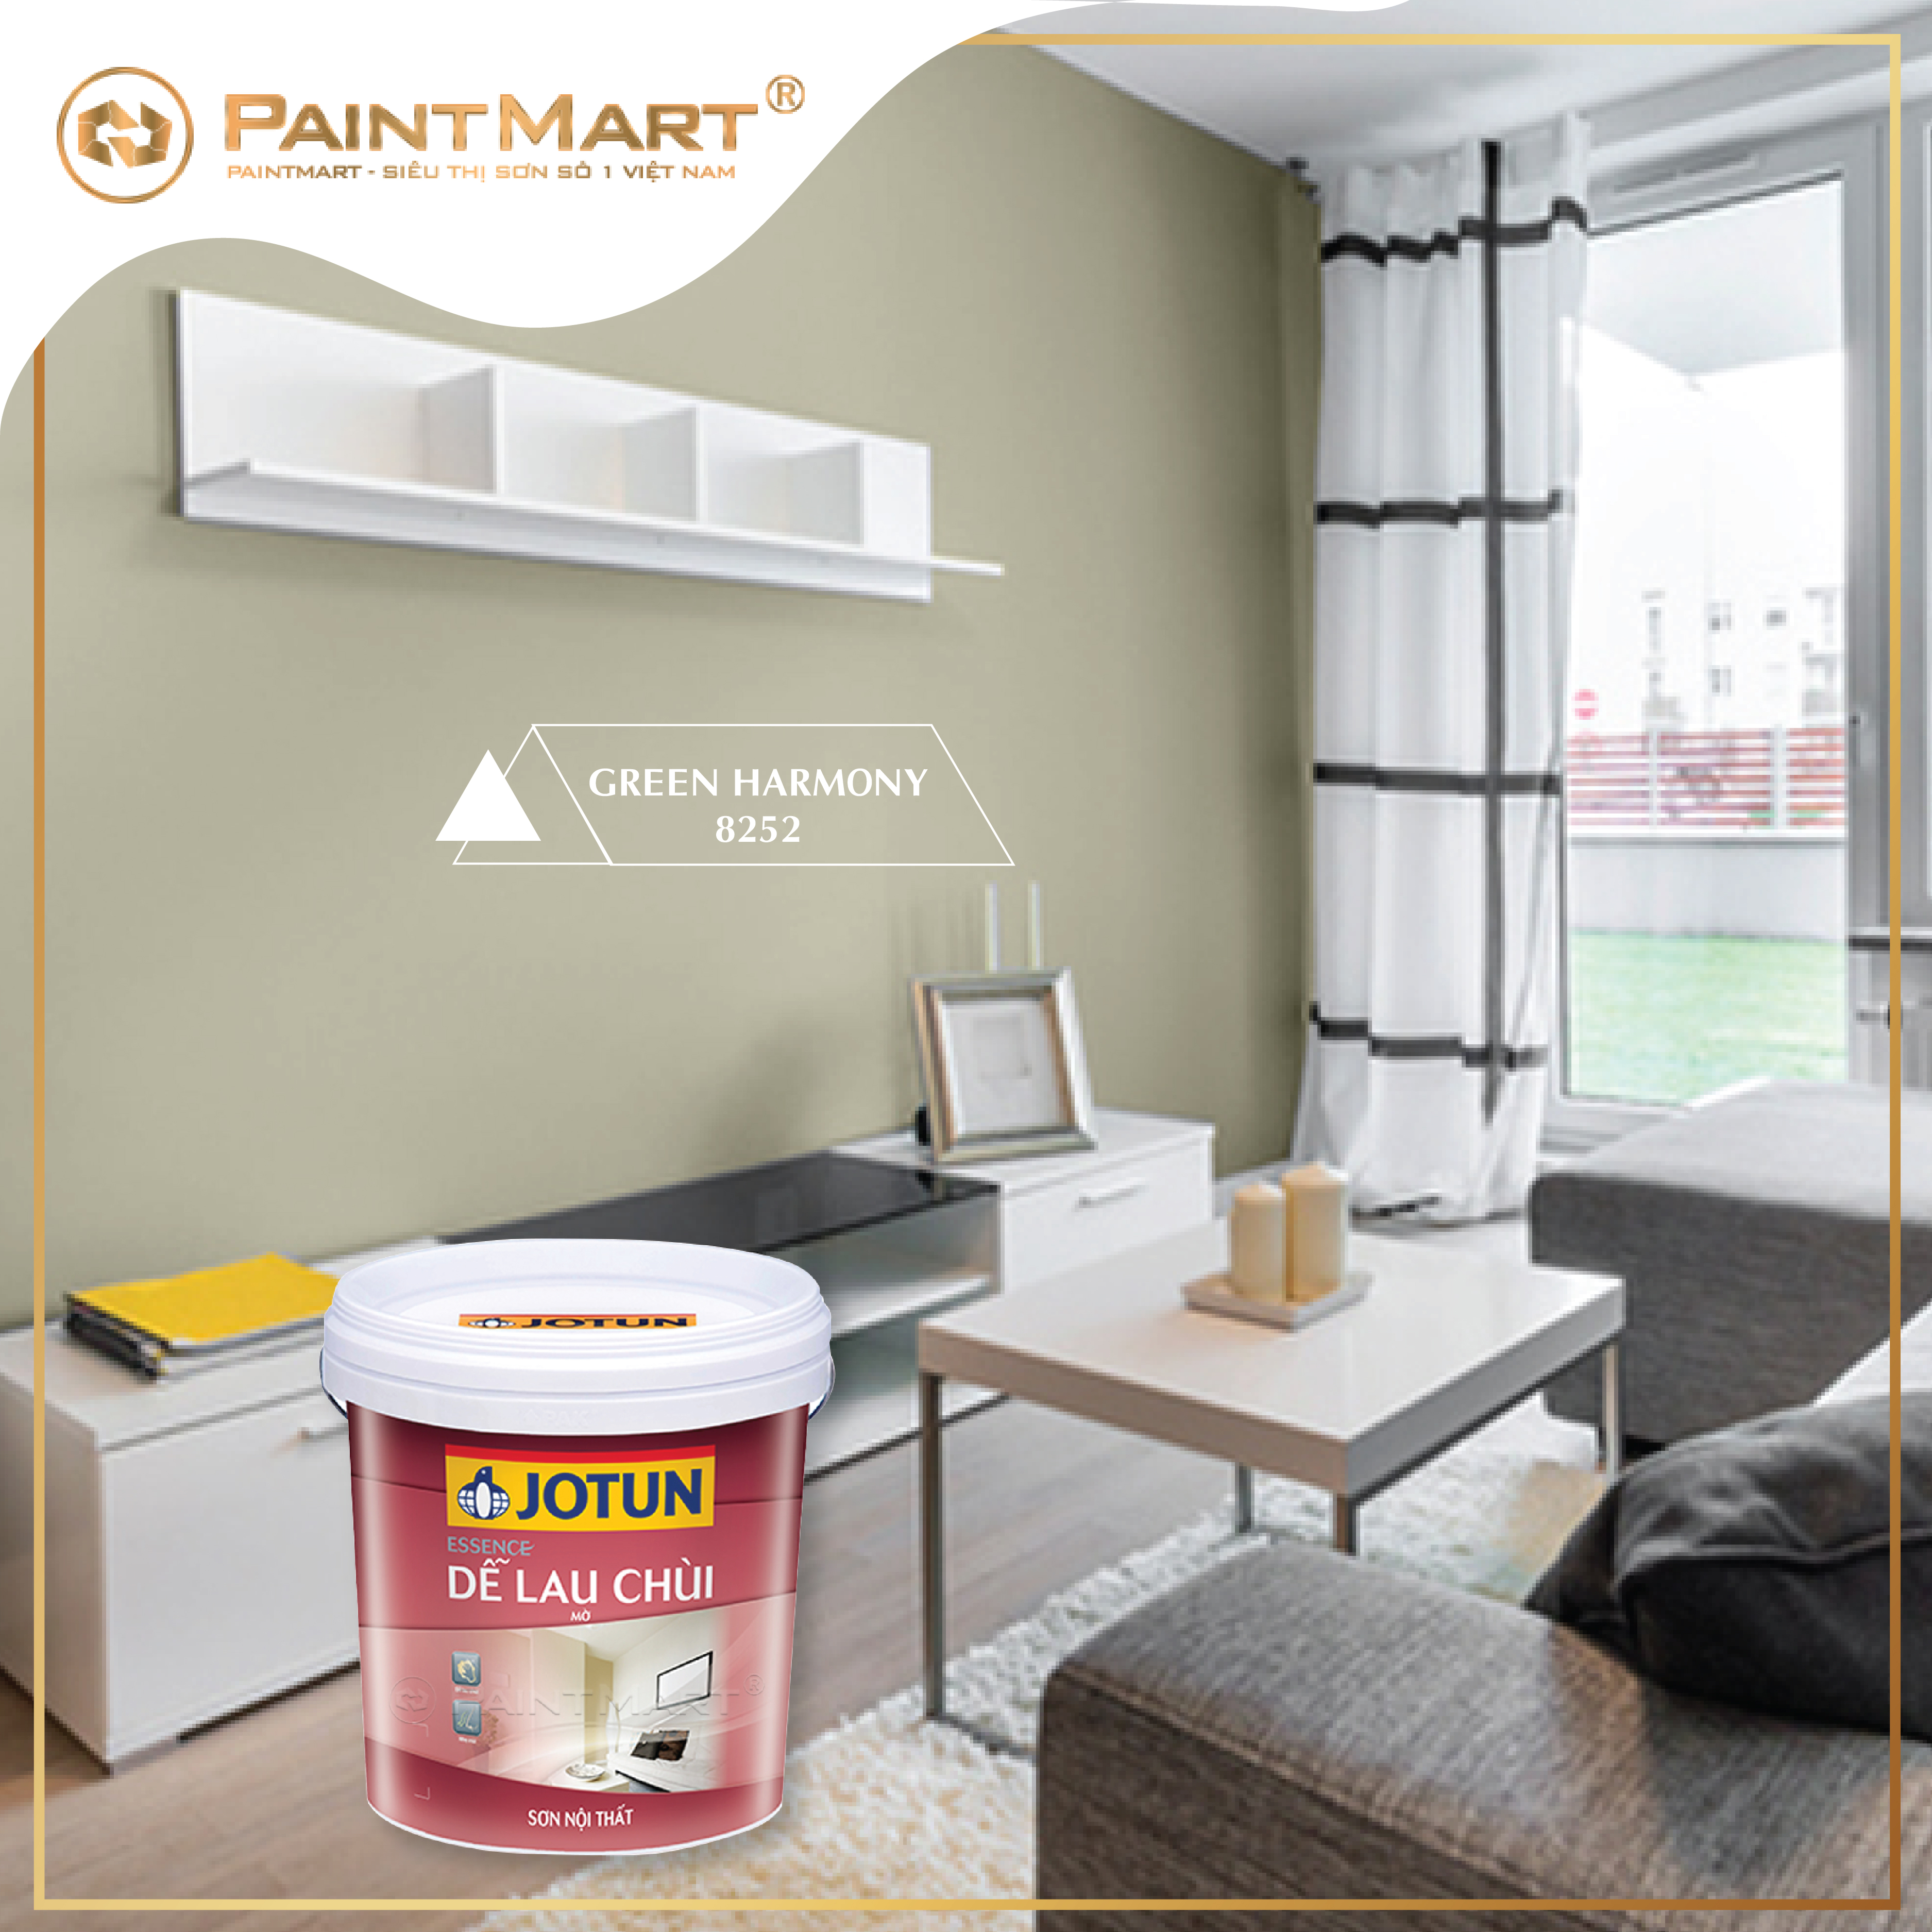 Với sơn Jotun, bạn sẽ cảm nhận được sự khác biệt chất lượng. Được sản xuất trên dây chuyền công nghệ hiện đại, sơn Jotun đem đến màu sắc đẹp và bền vững cho ngôi nhà của bạn.